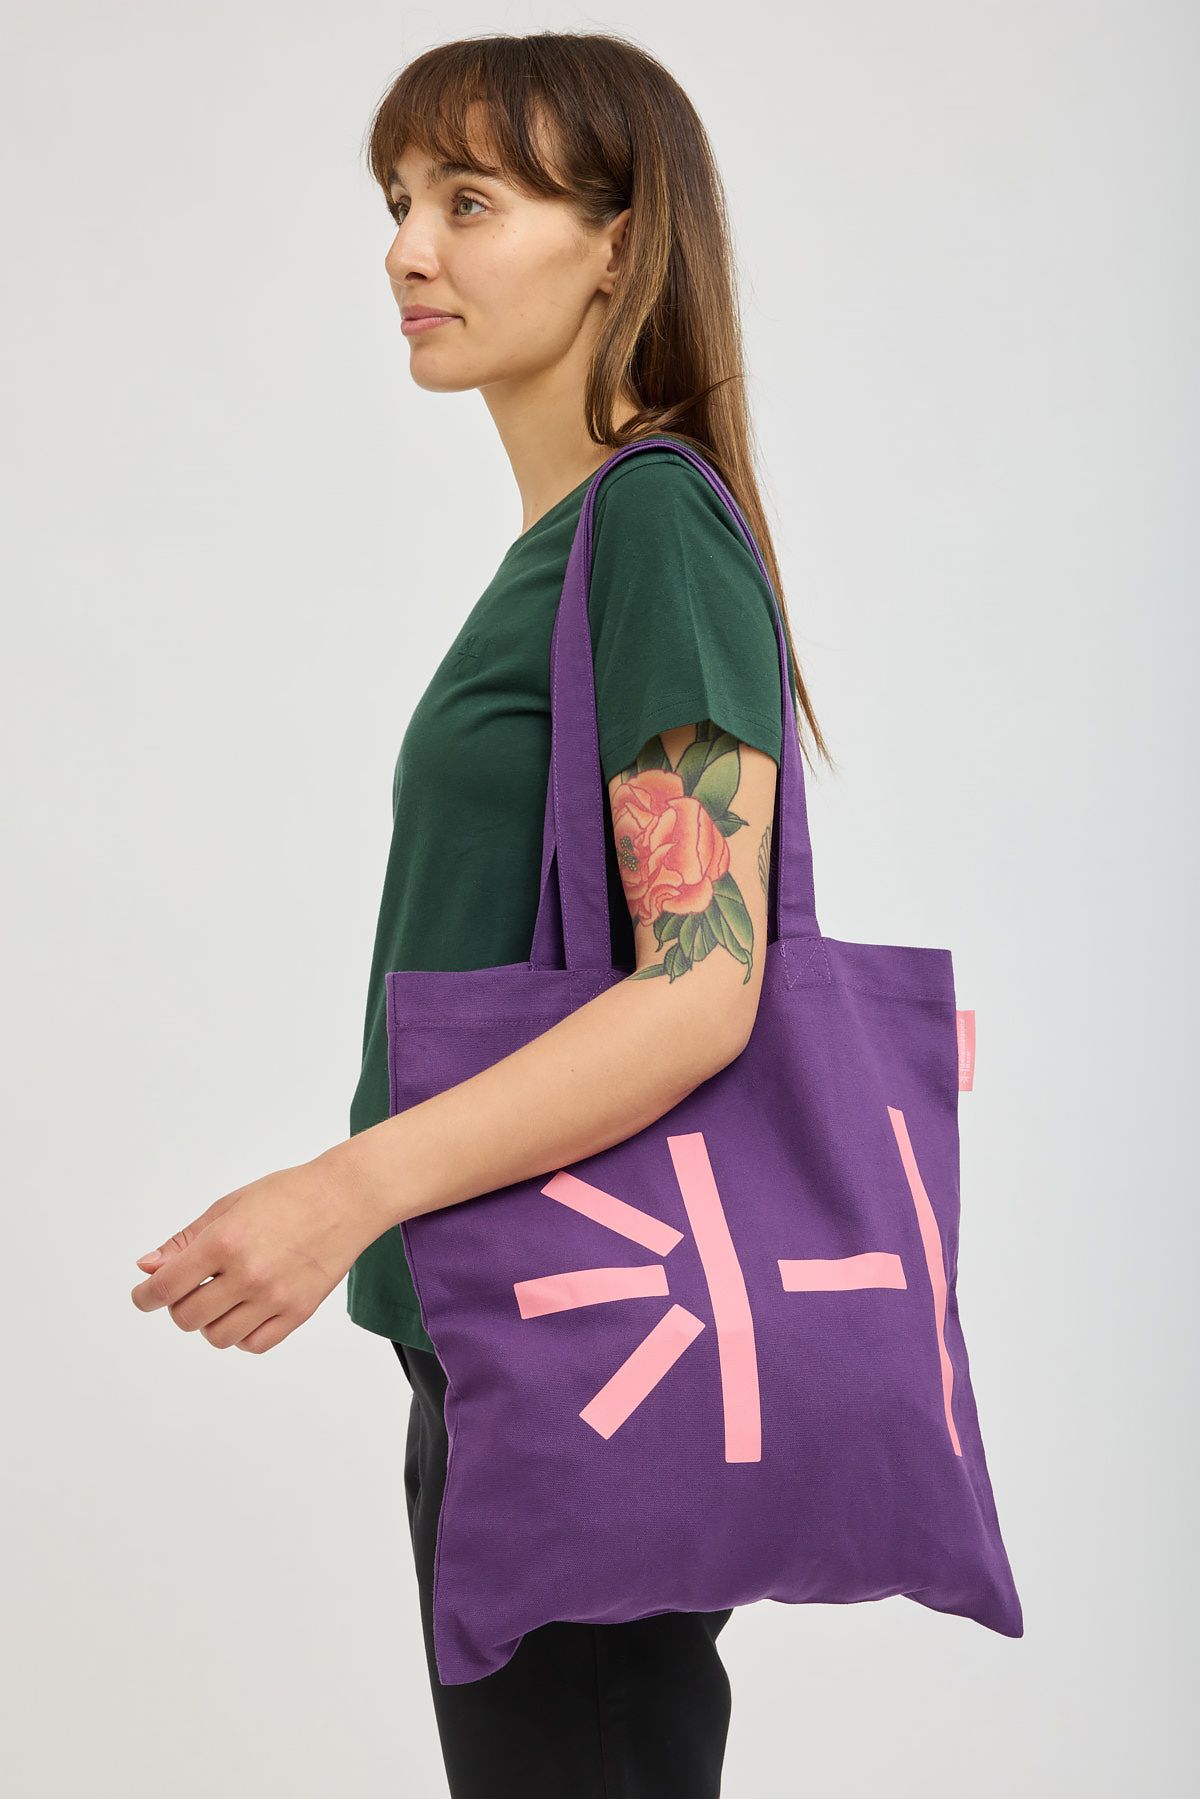 Weibliches Model mit violettem USB-Merchandise Totebag